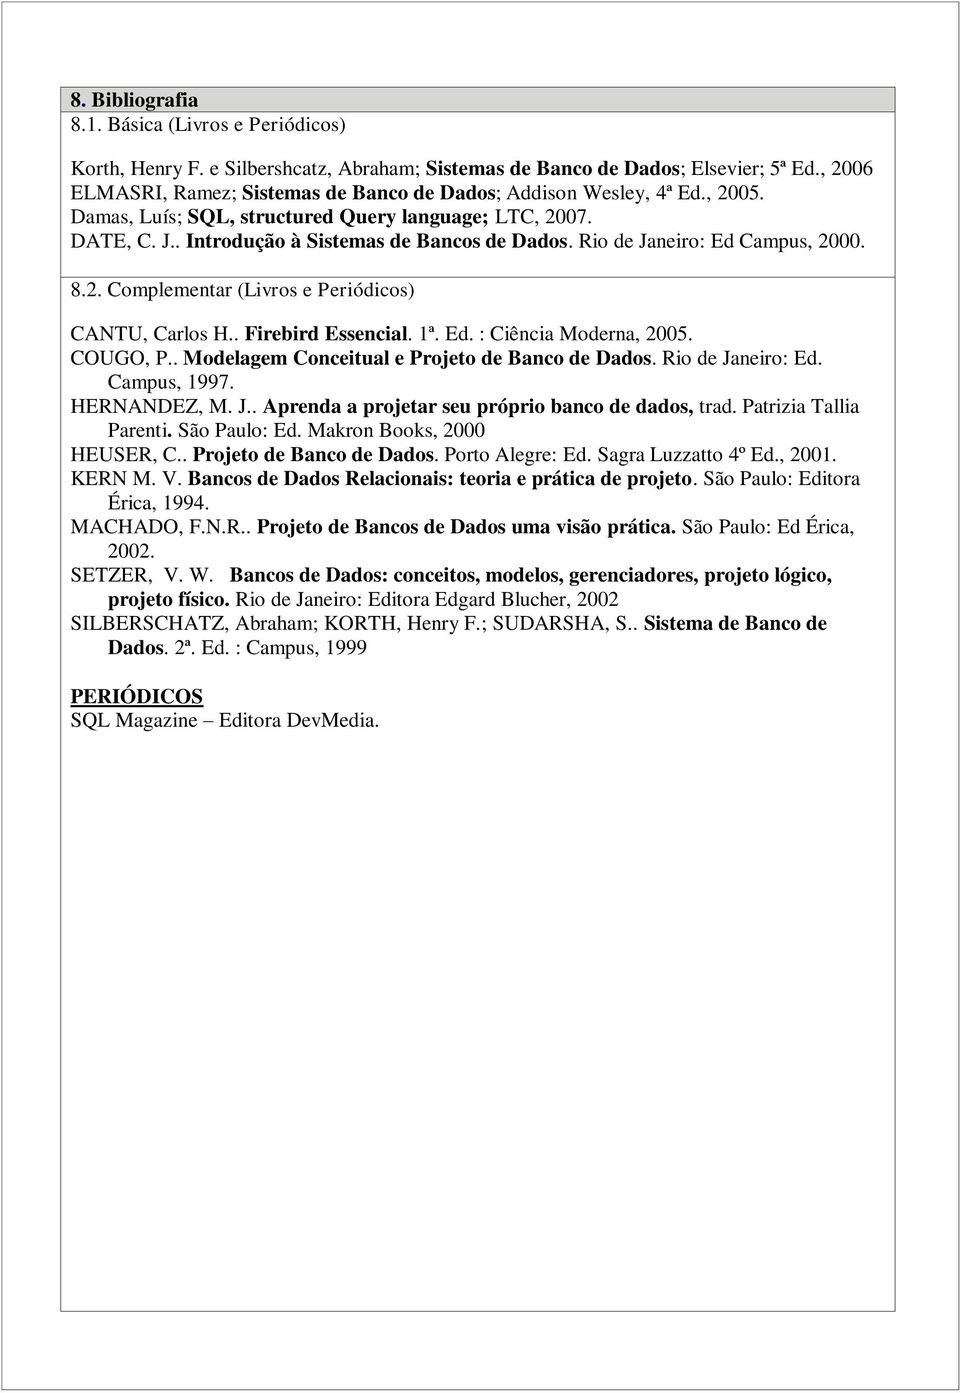 Rio de Janeiro: Ed Campus, 2000. 8.2. Complementar (Livros e Periódicos) CANTU, Carlos H.. Firebird Essencial. 1ª. Ed. : Ciência Moderna, 2005. COUGO, P.